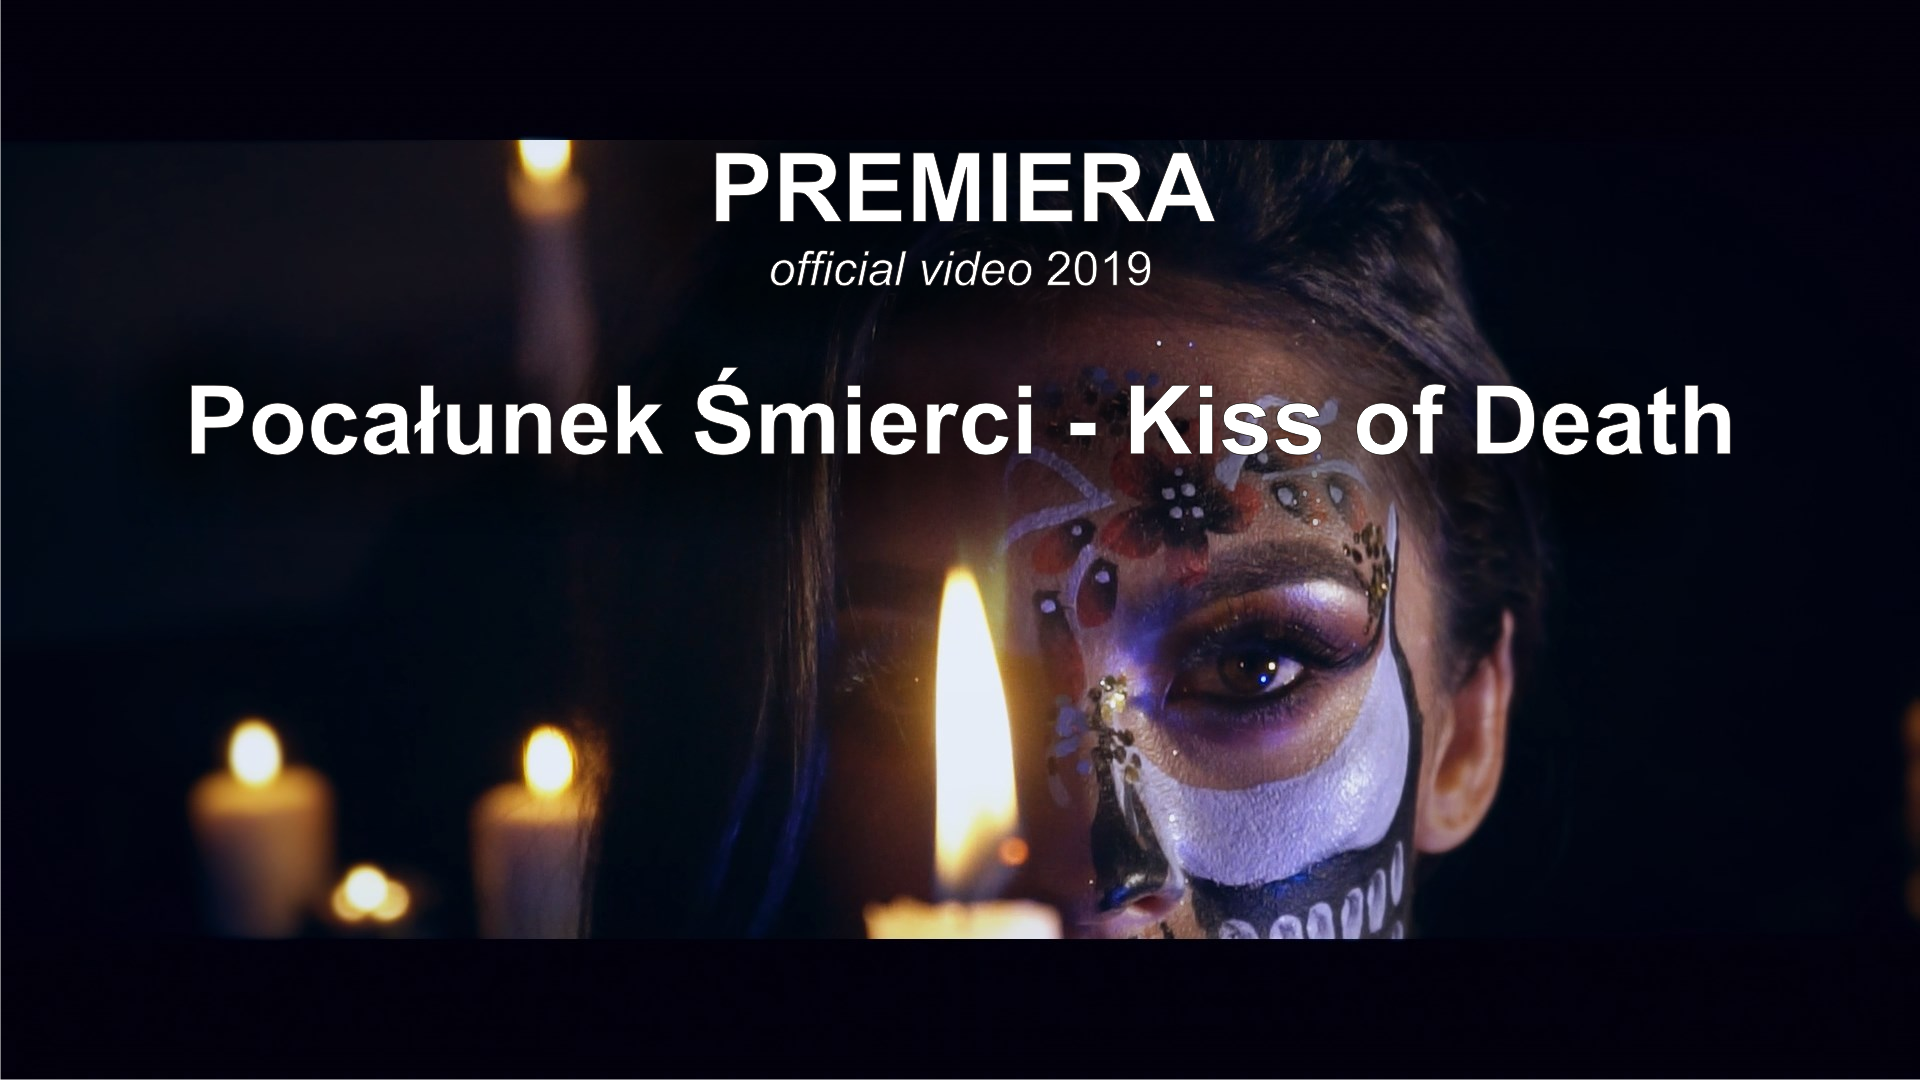 PREMIERA - Pocalunek_Smierci_Kiss of Death (official video) 2019